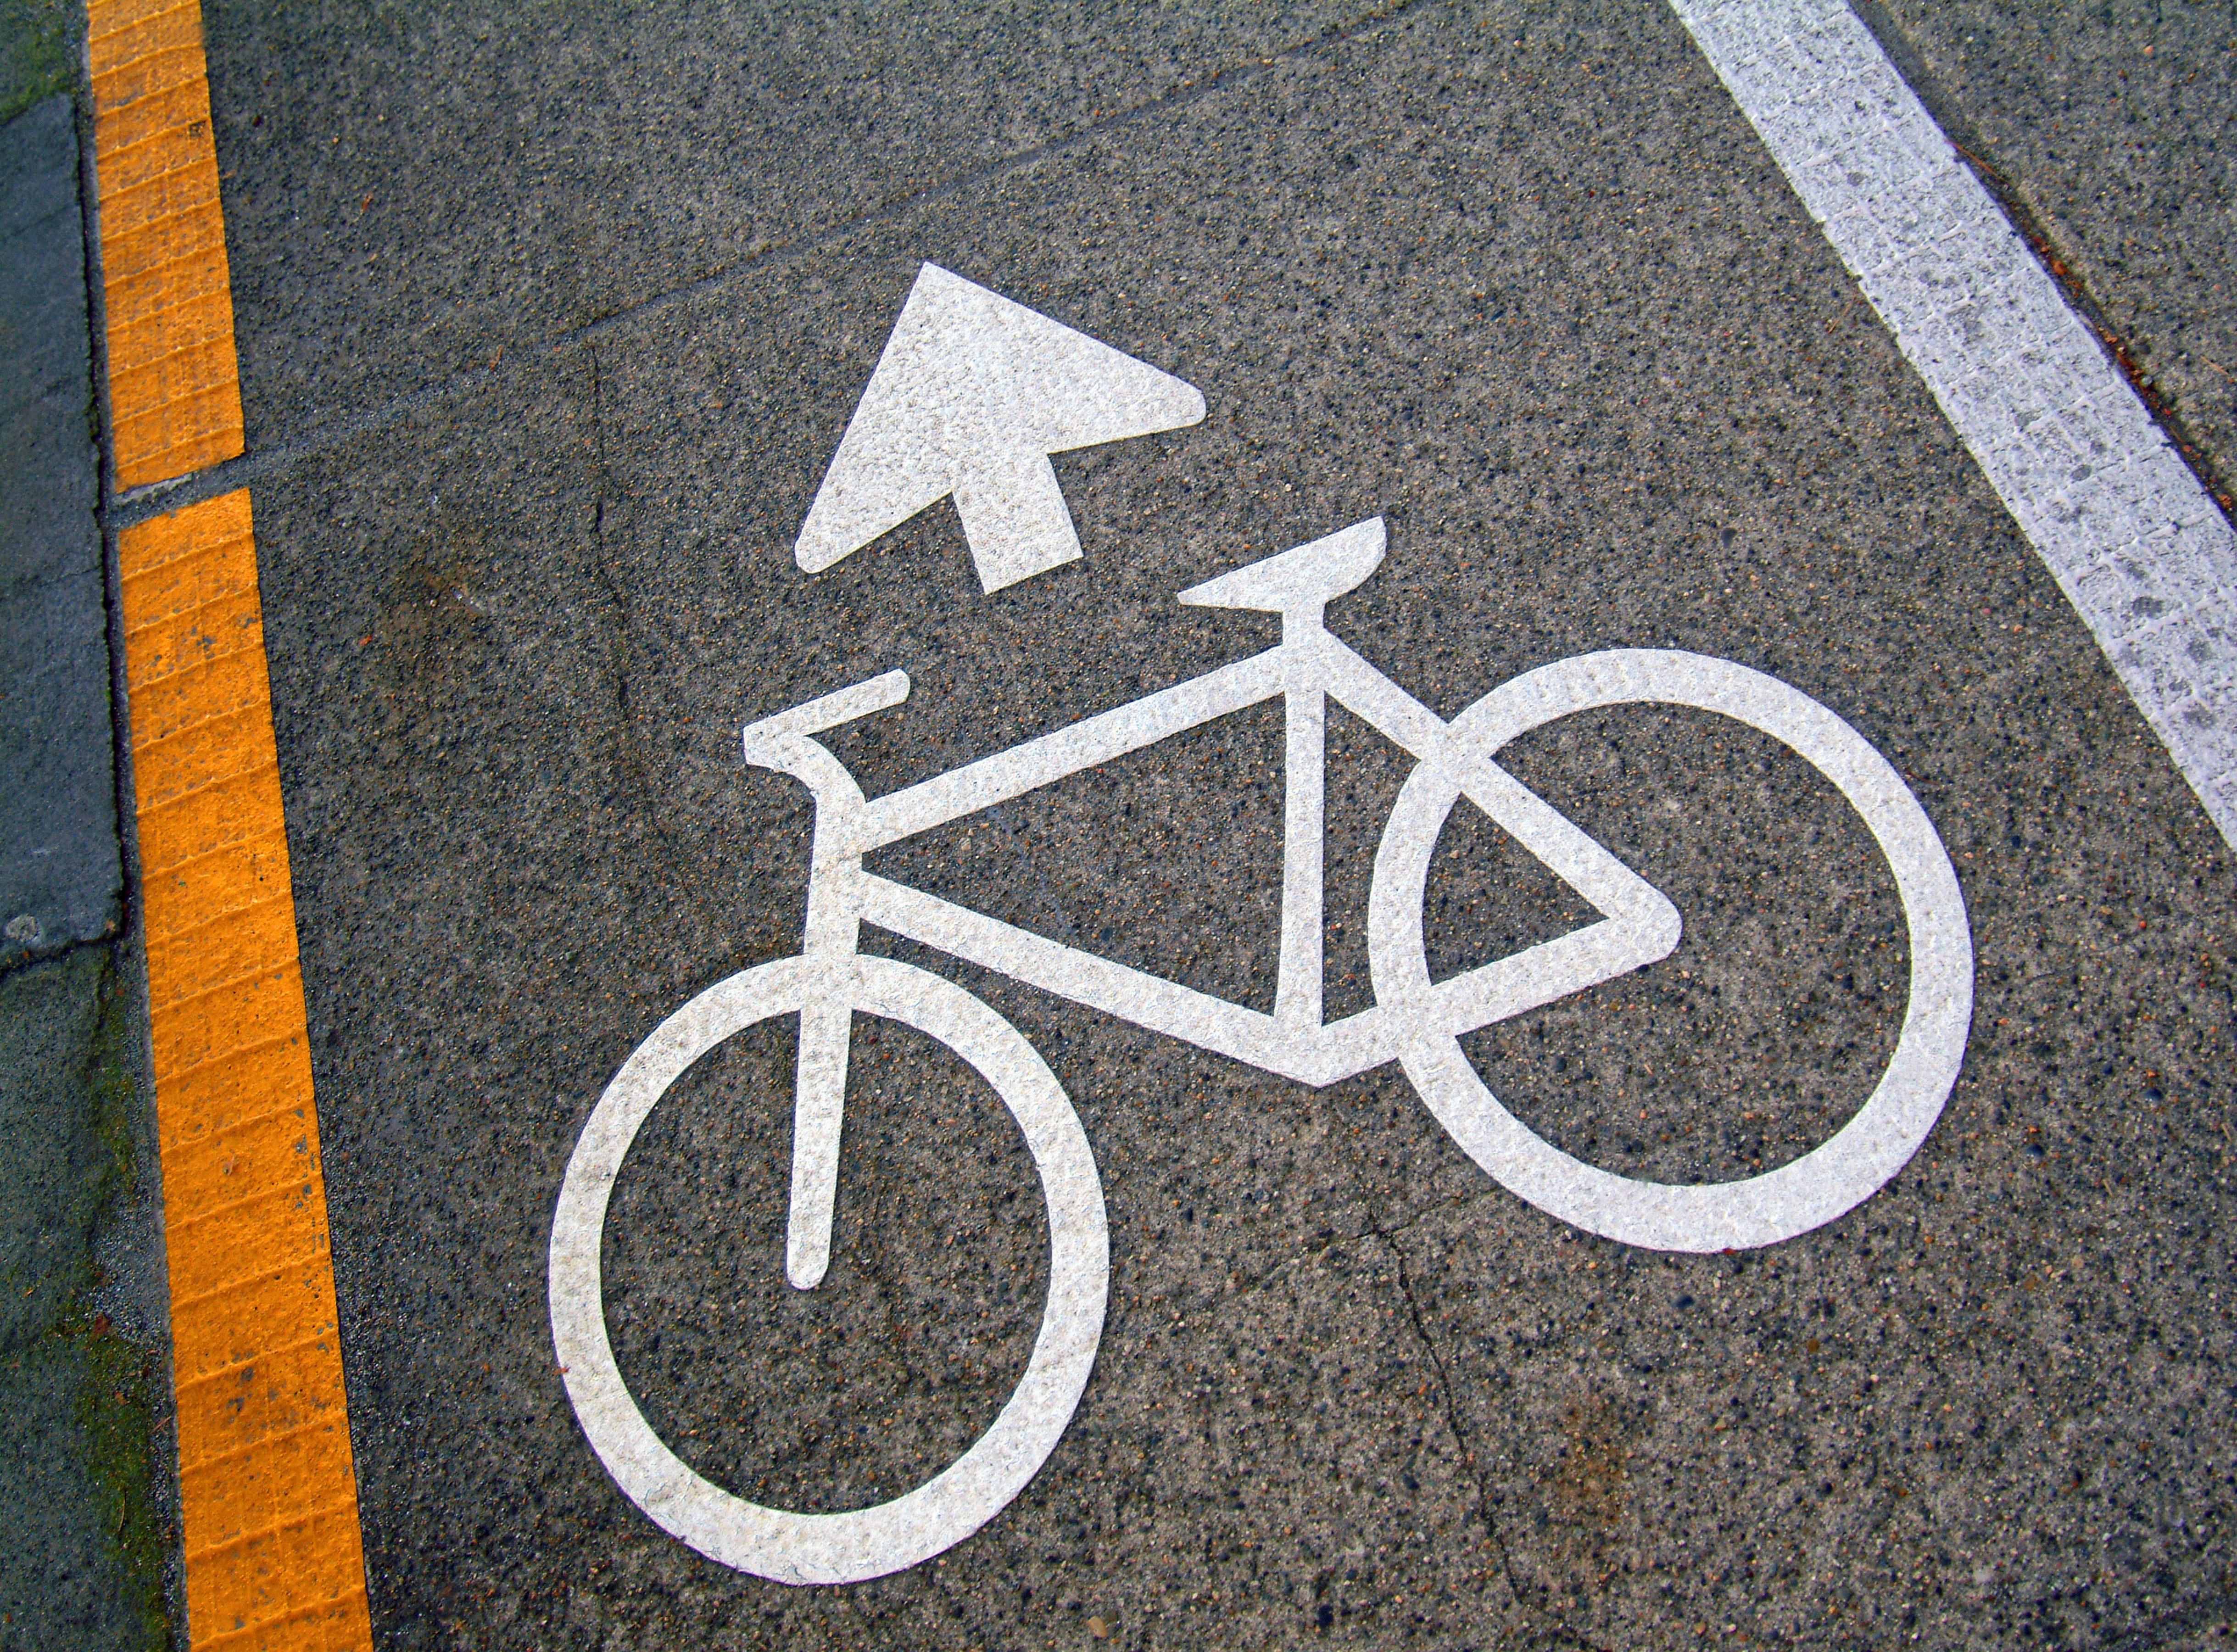 Image of bicycle lane